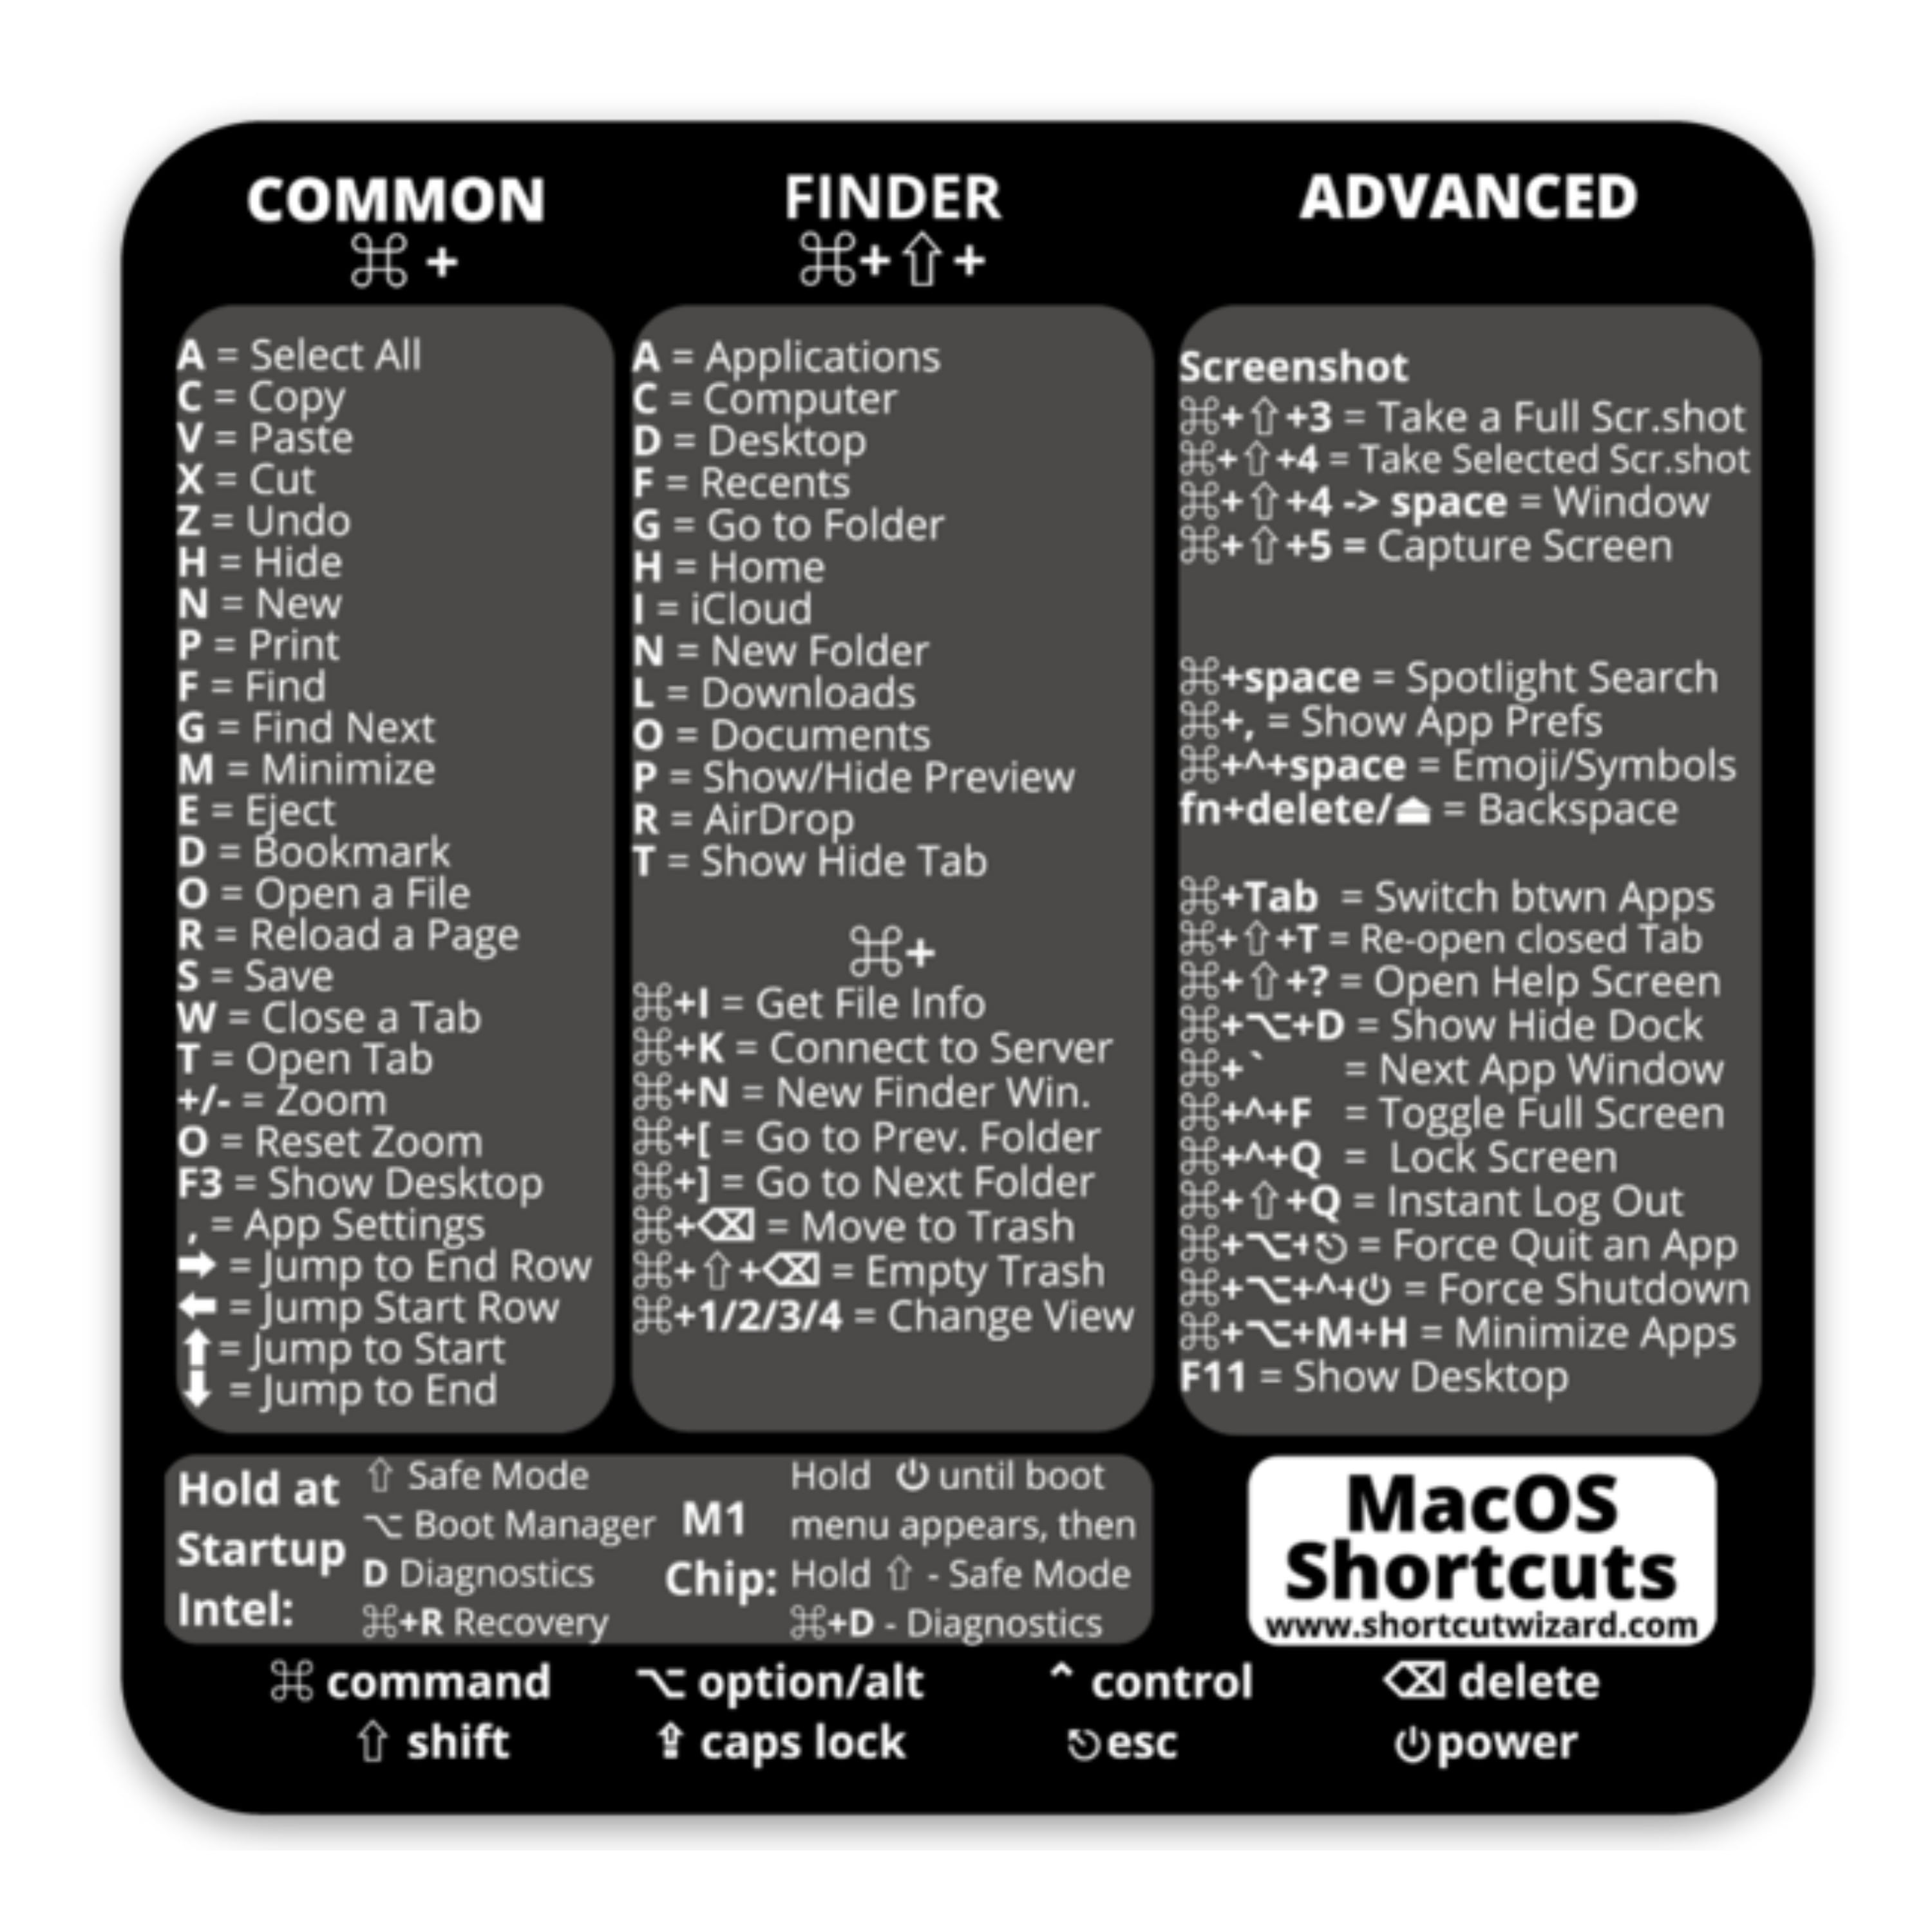 macos key shortcuts